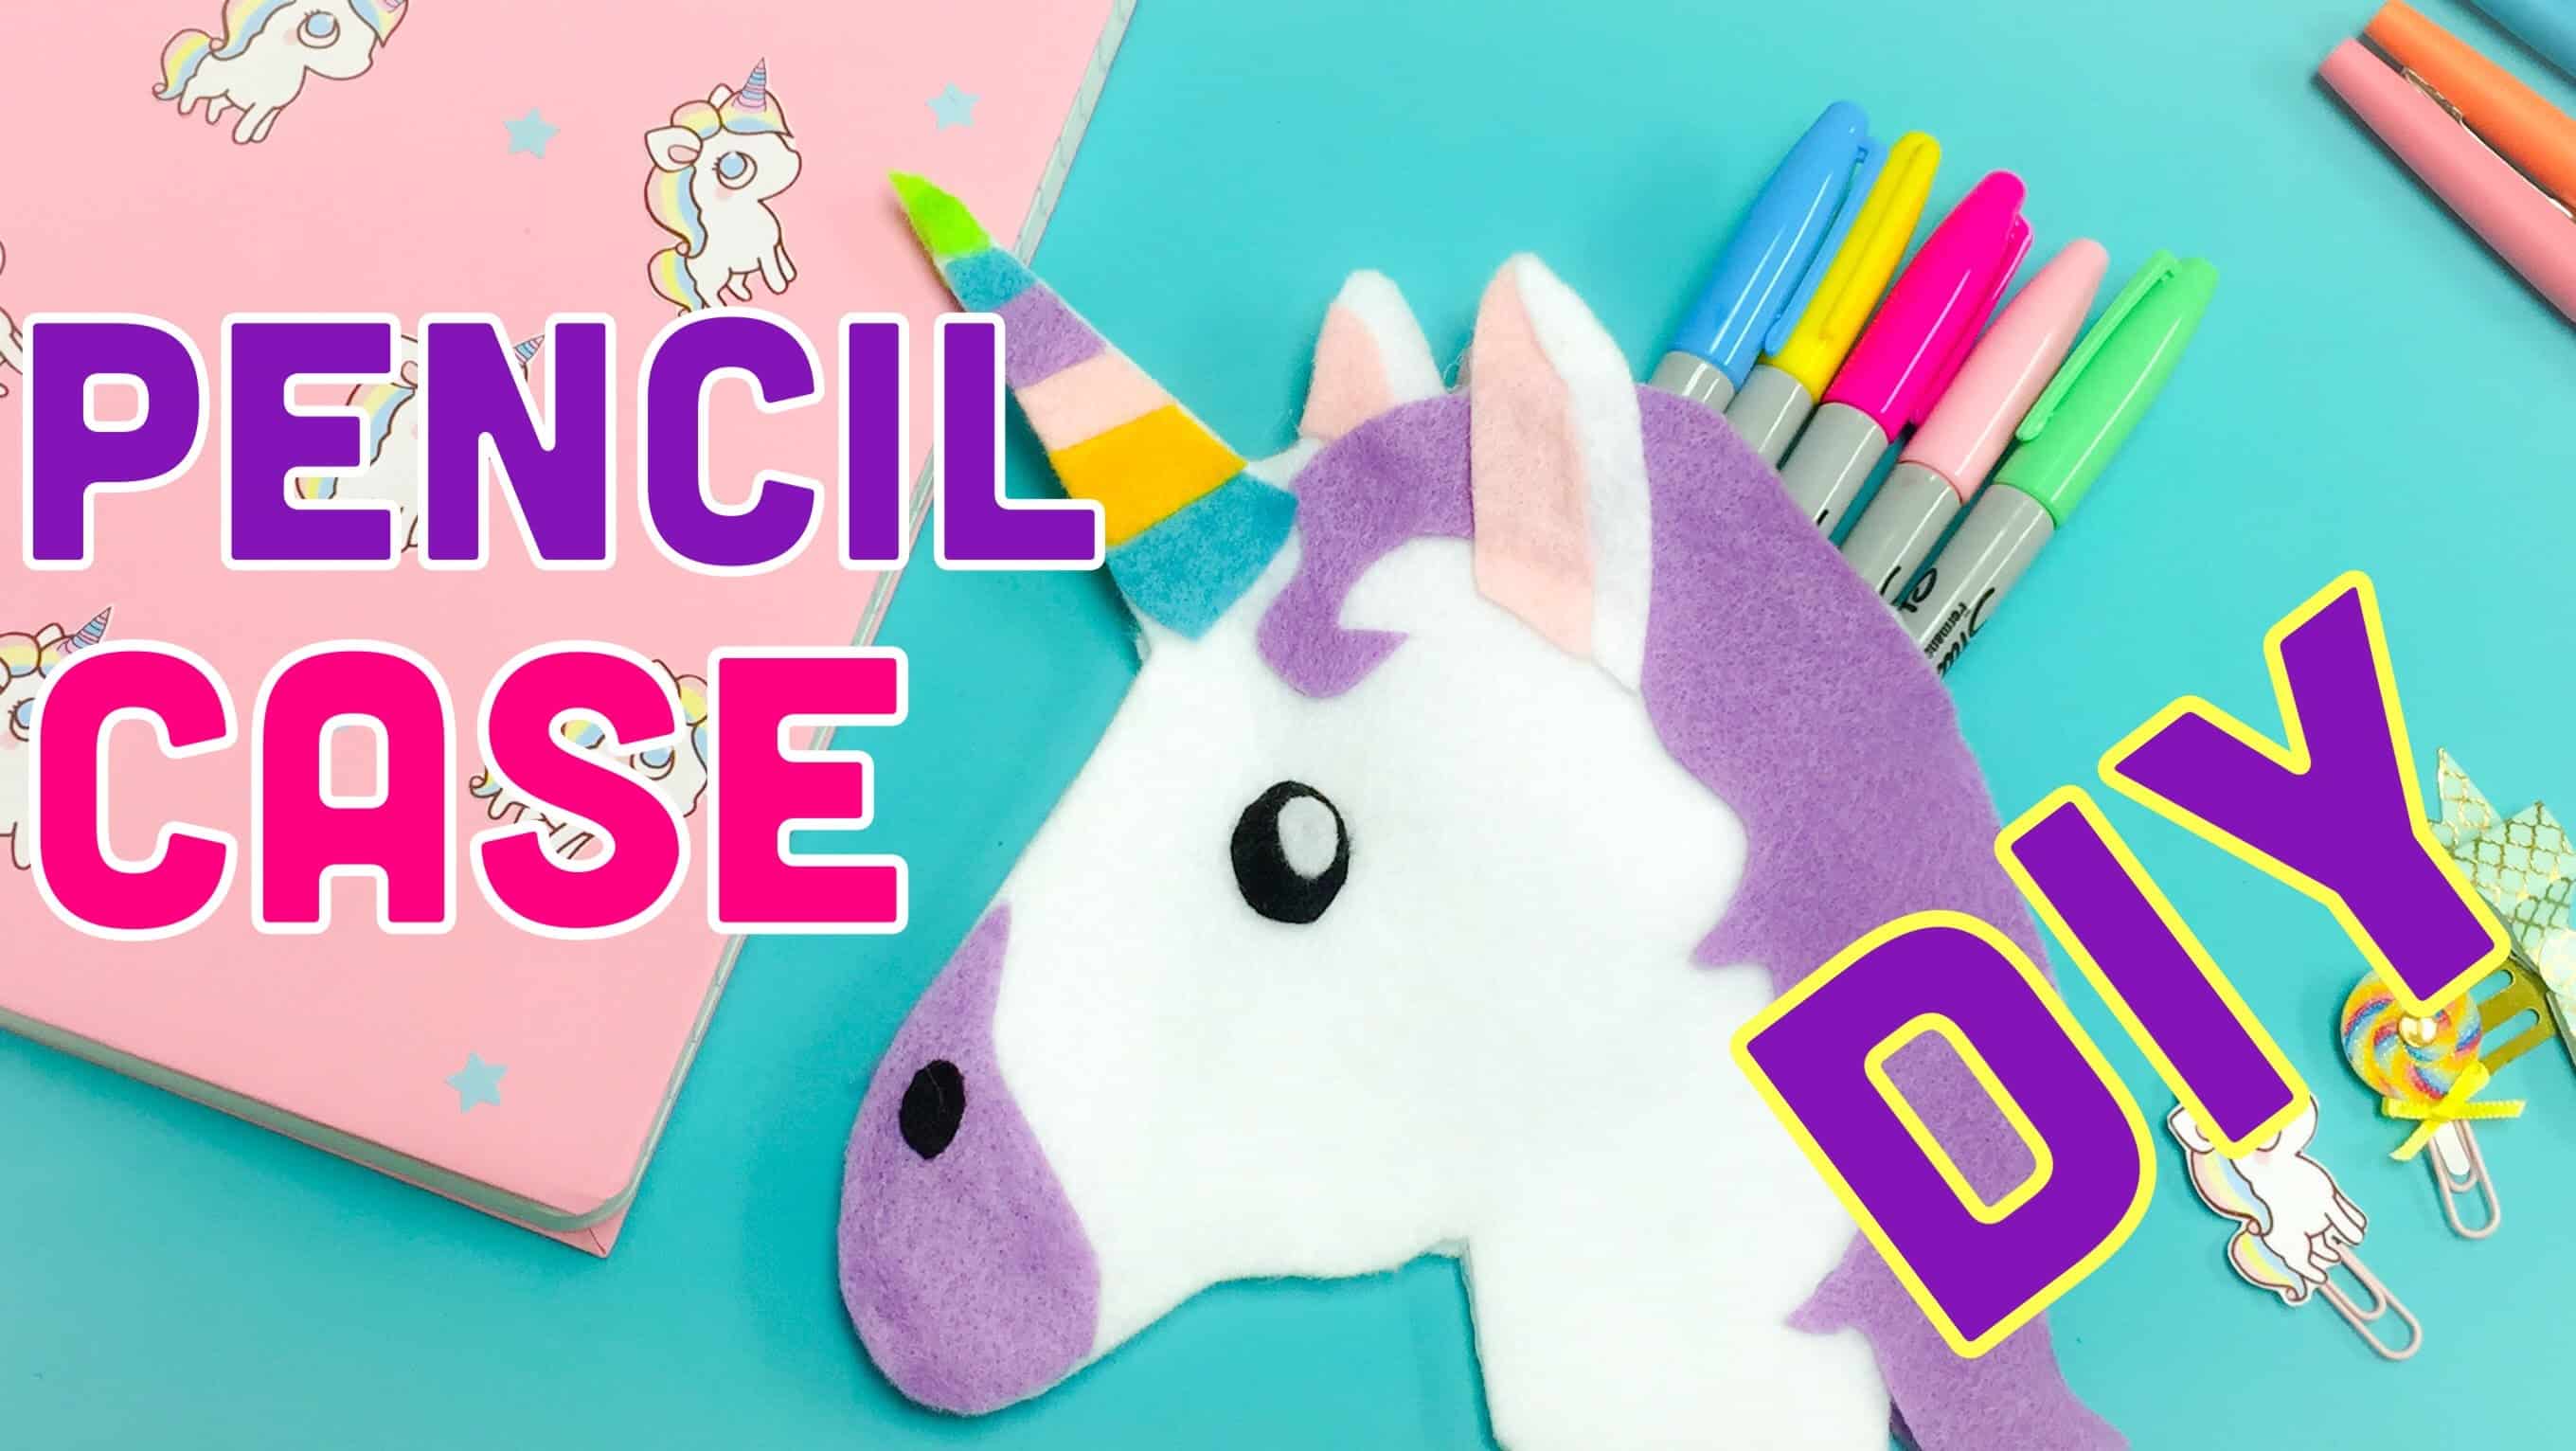 Unicorn pencil case